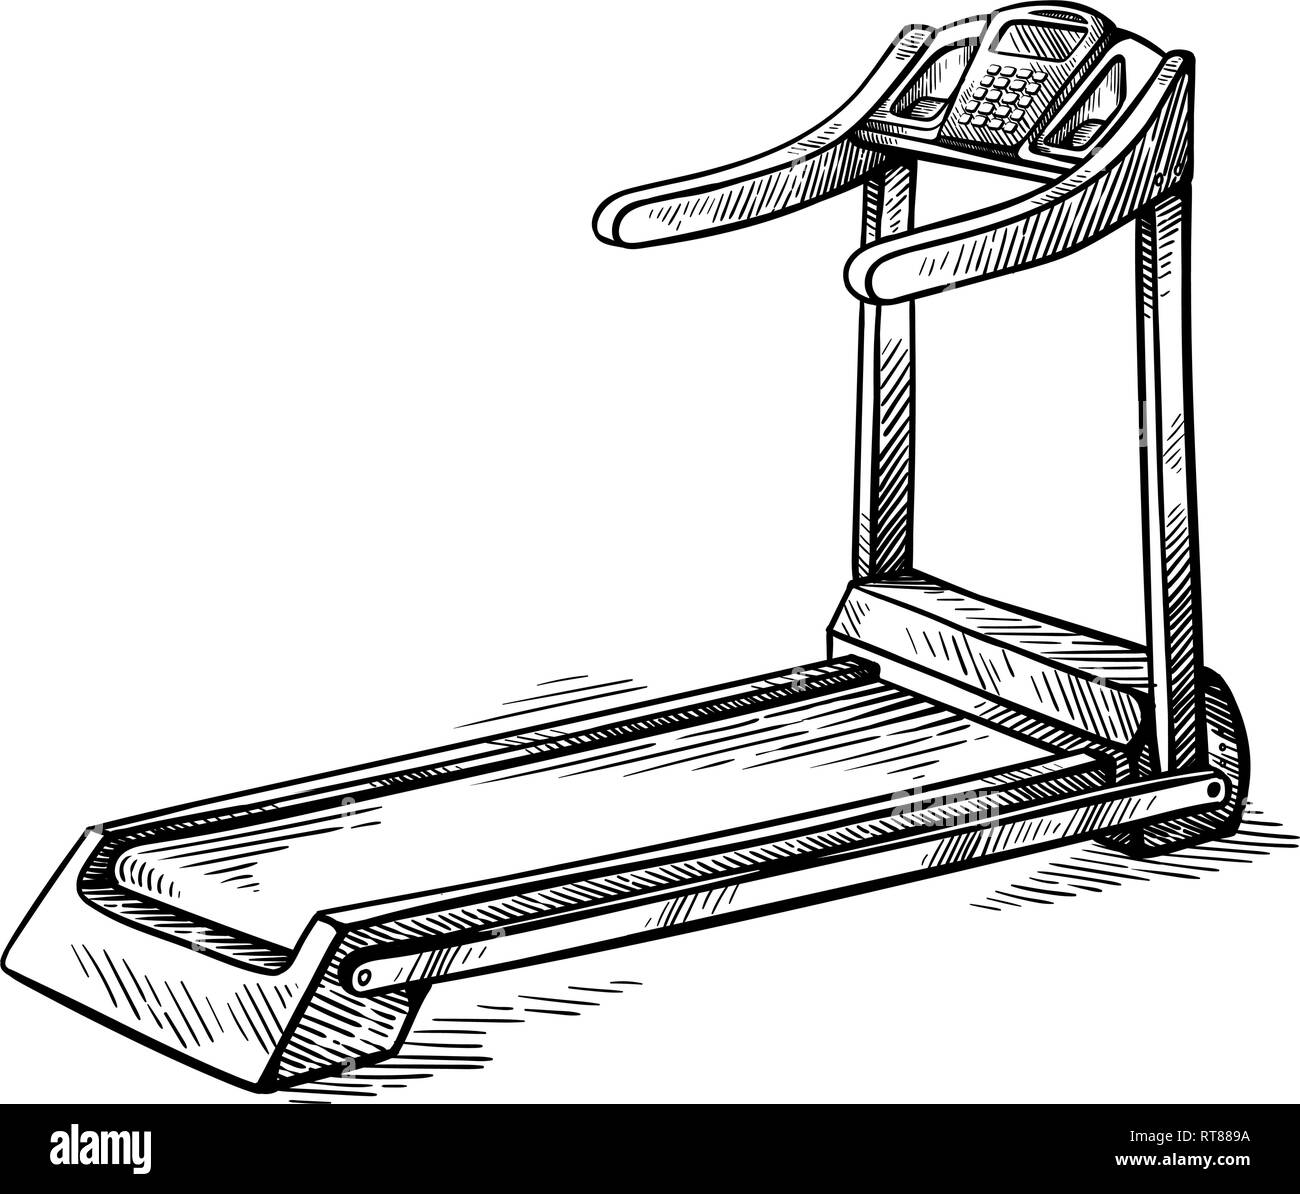 Croquis dessinés à la main de l'équipement de sport tapis roulant machine vector illustration Illustration de Vecteur